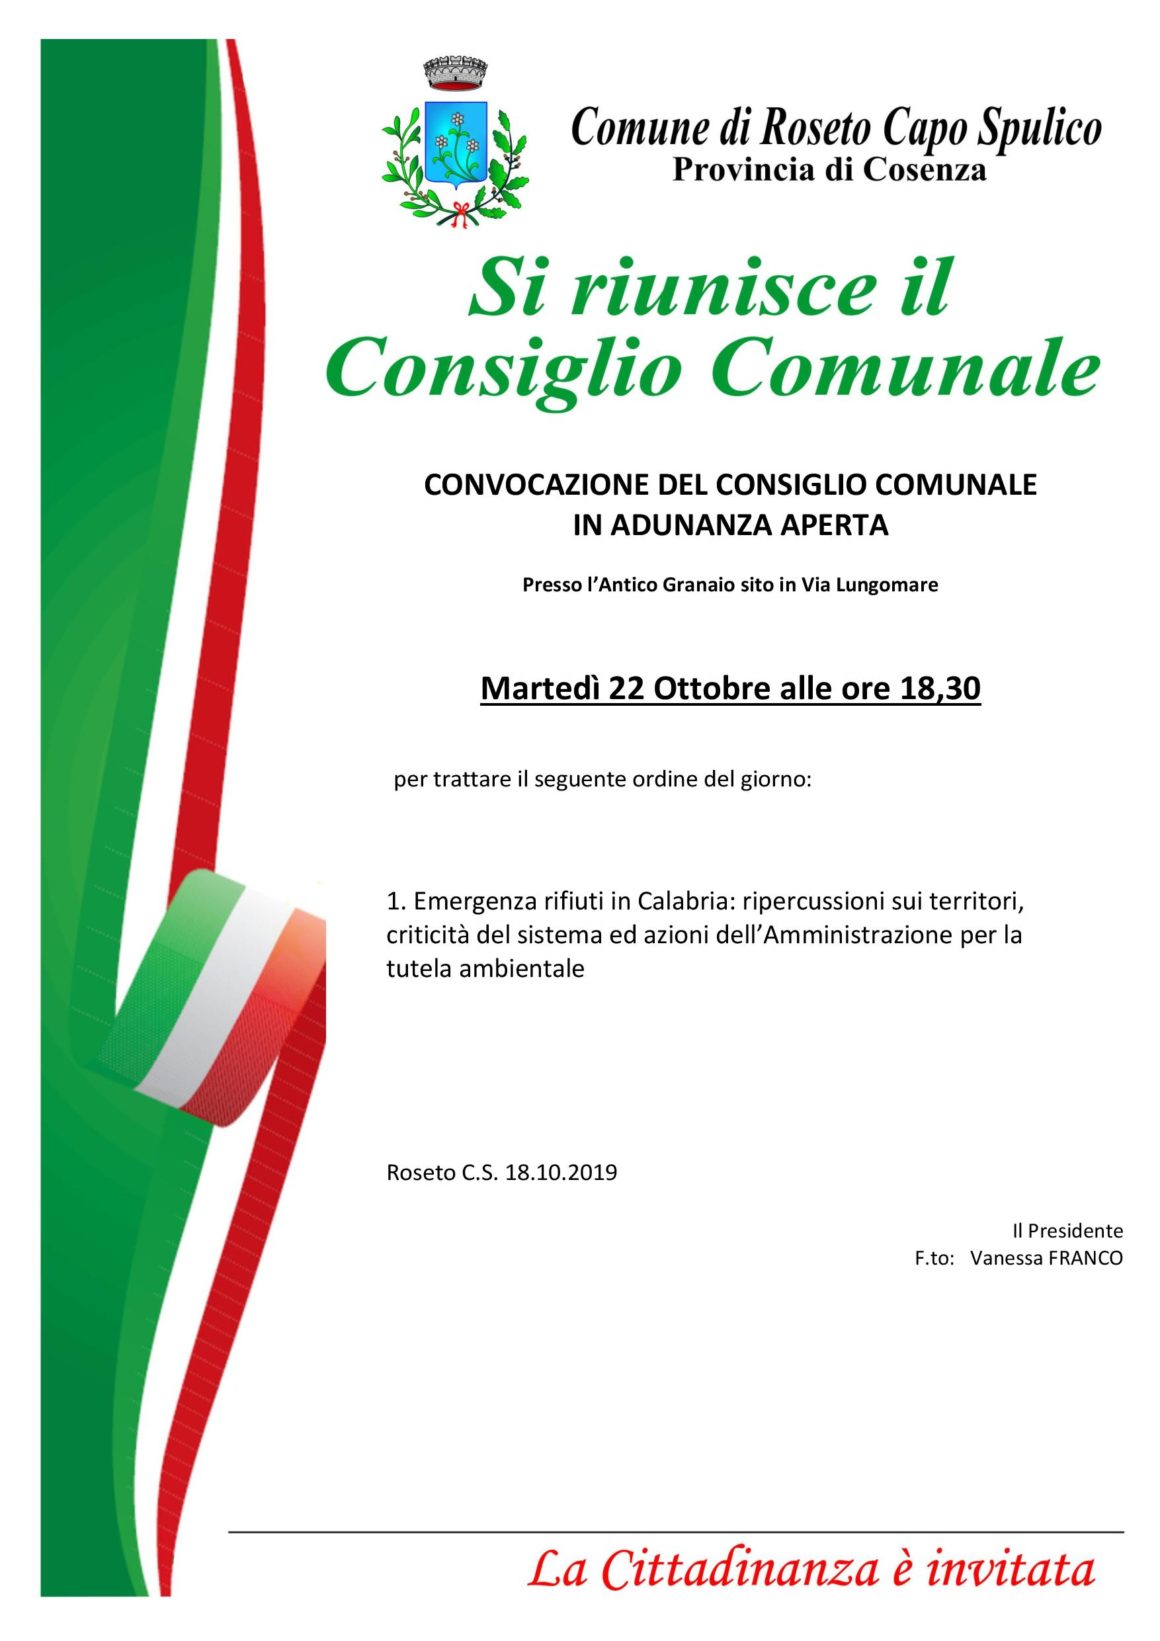 CONVOCAZIONE DEL CONSIGLIO COMUNALE IN ADUNANZA APERTA – 22.10.2019